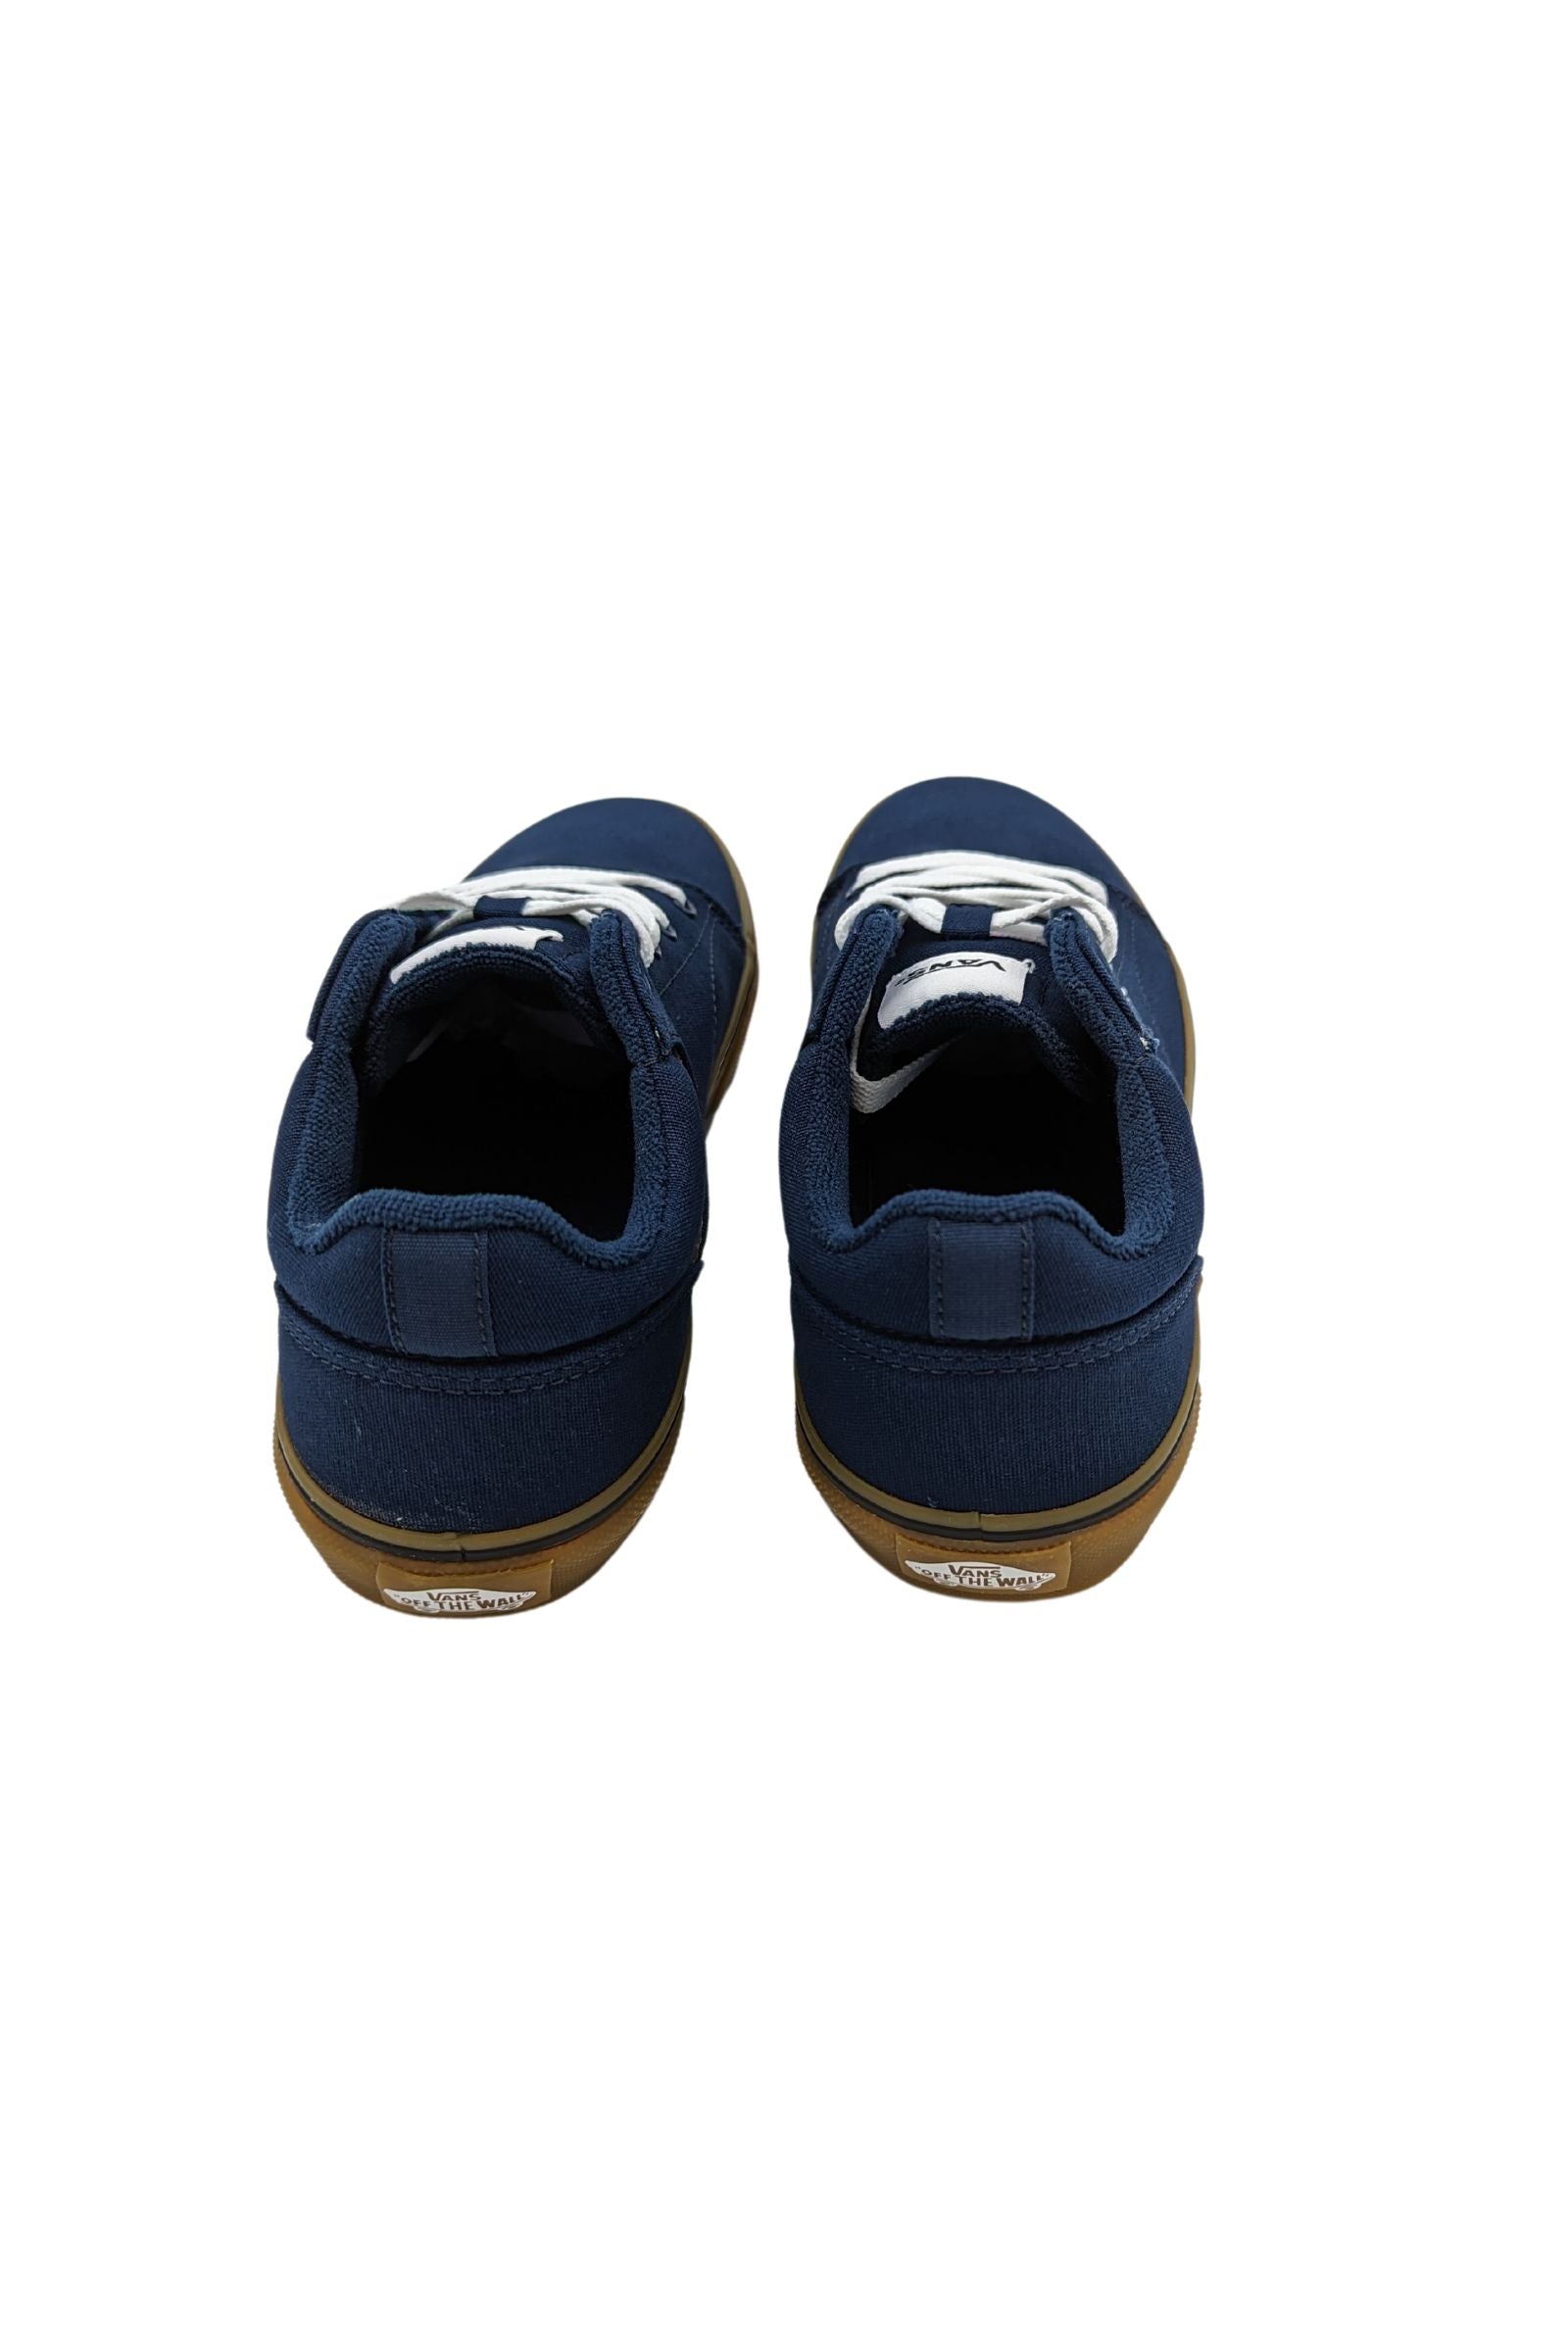 Seldan Dress Blue Boys Sneakers-Back View